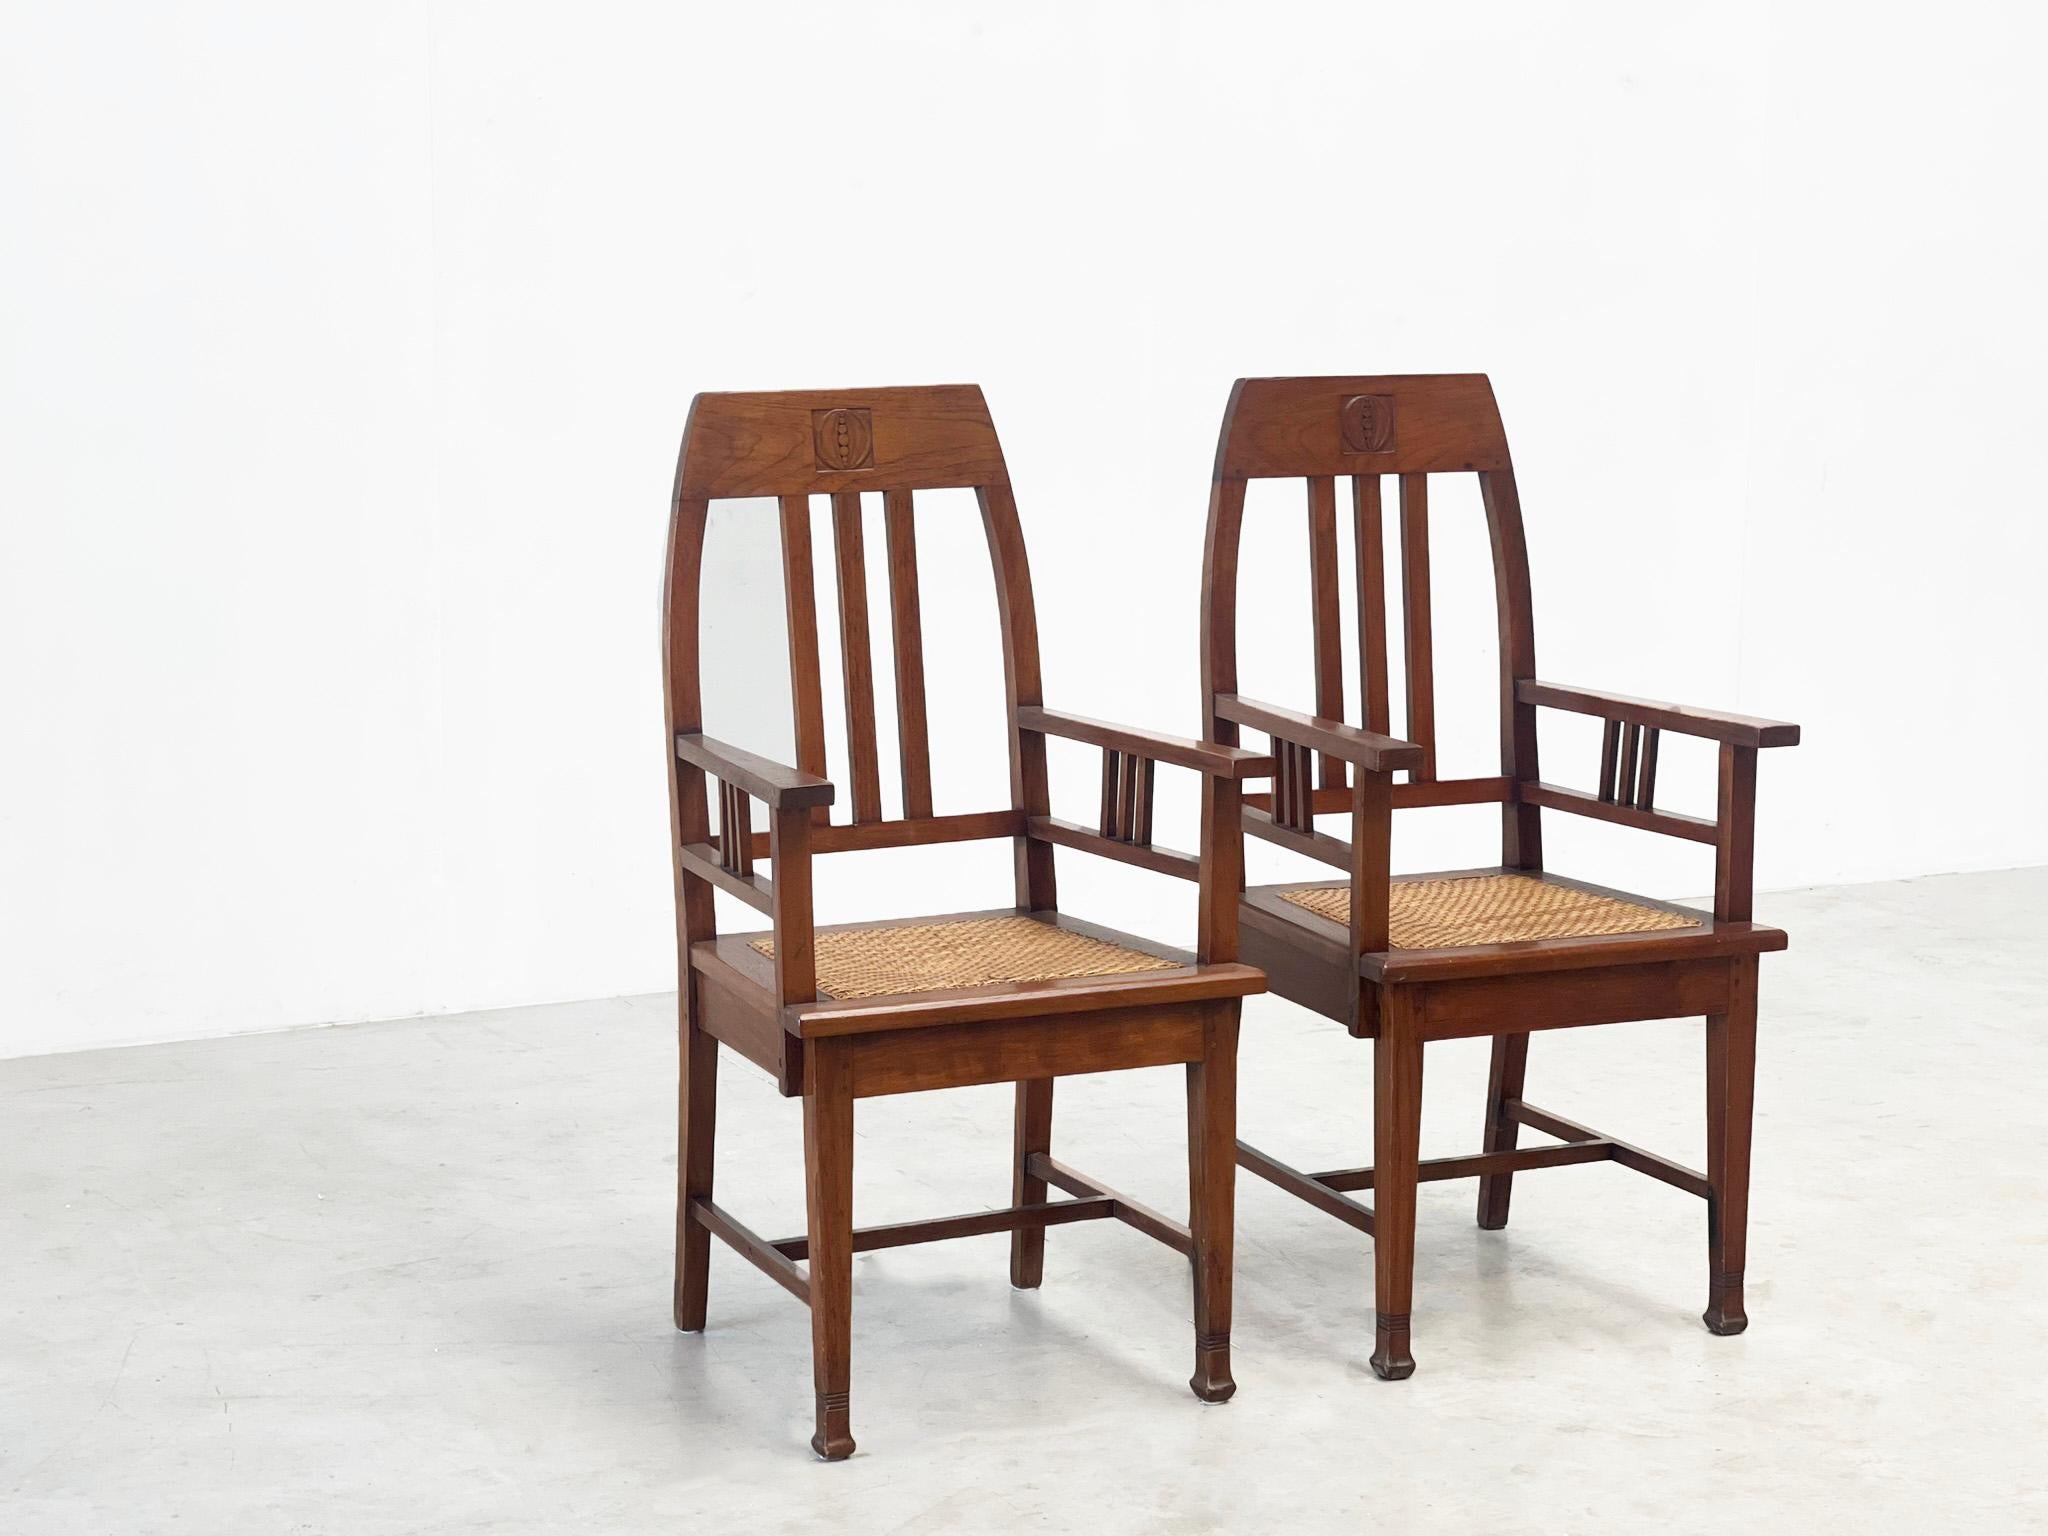 Ein Paar Amsterdamer Schulsessel aus den 1940er Jahren
Hübsches Paar Sessel oder Beistellstühle aus Holland. Diese Stühle wurden von der berühmten Bewegung 